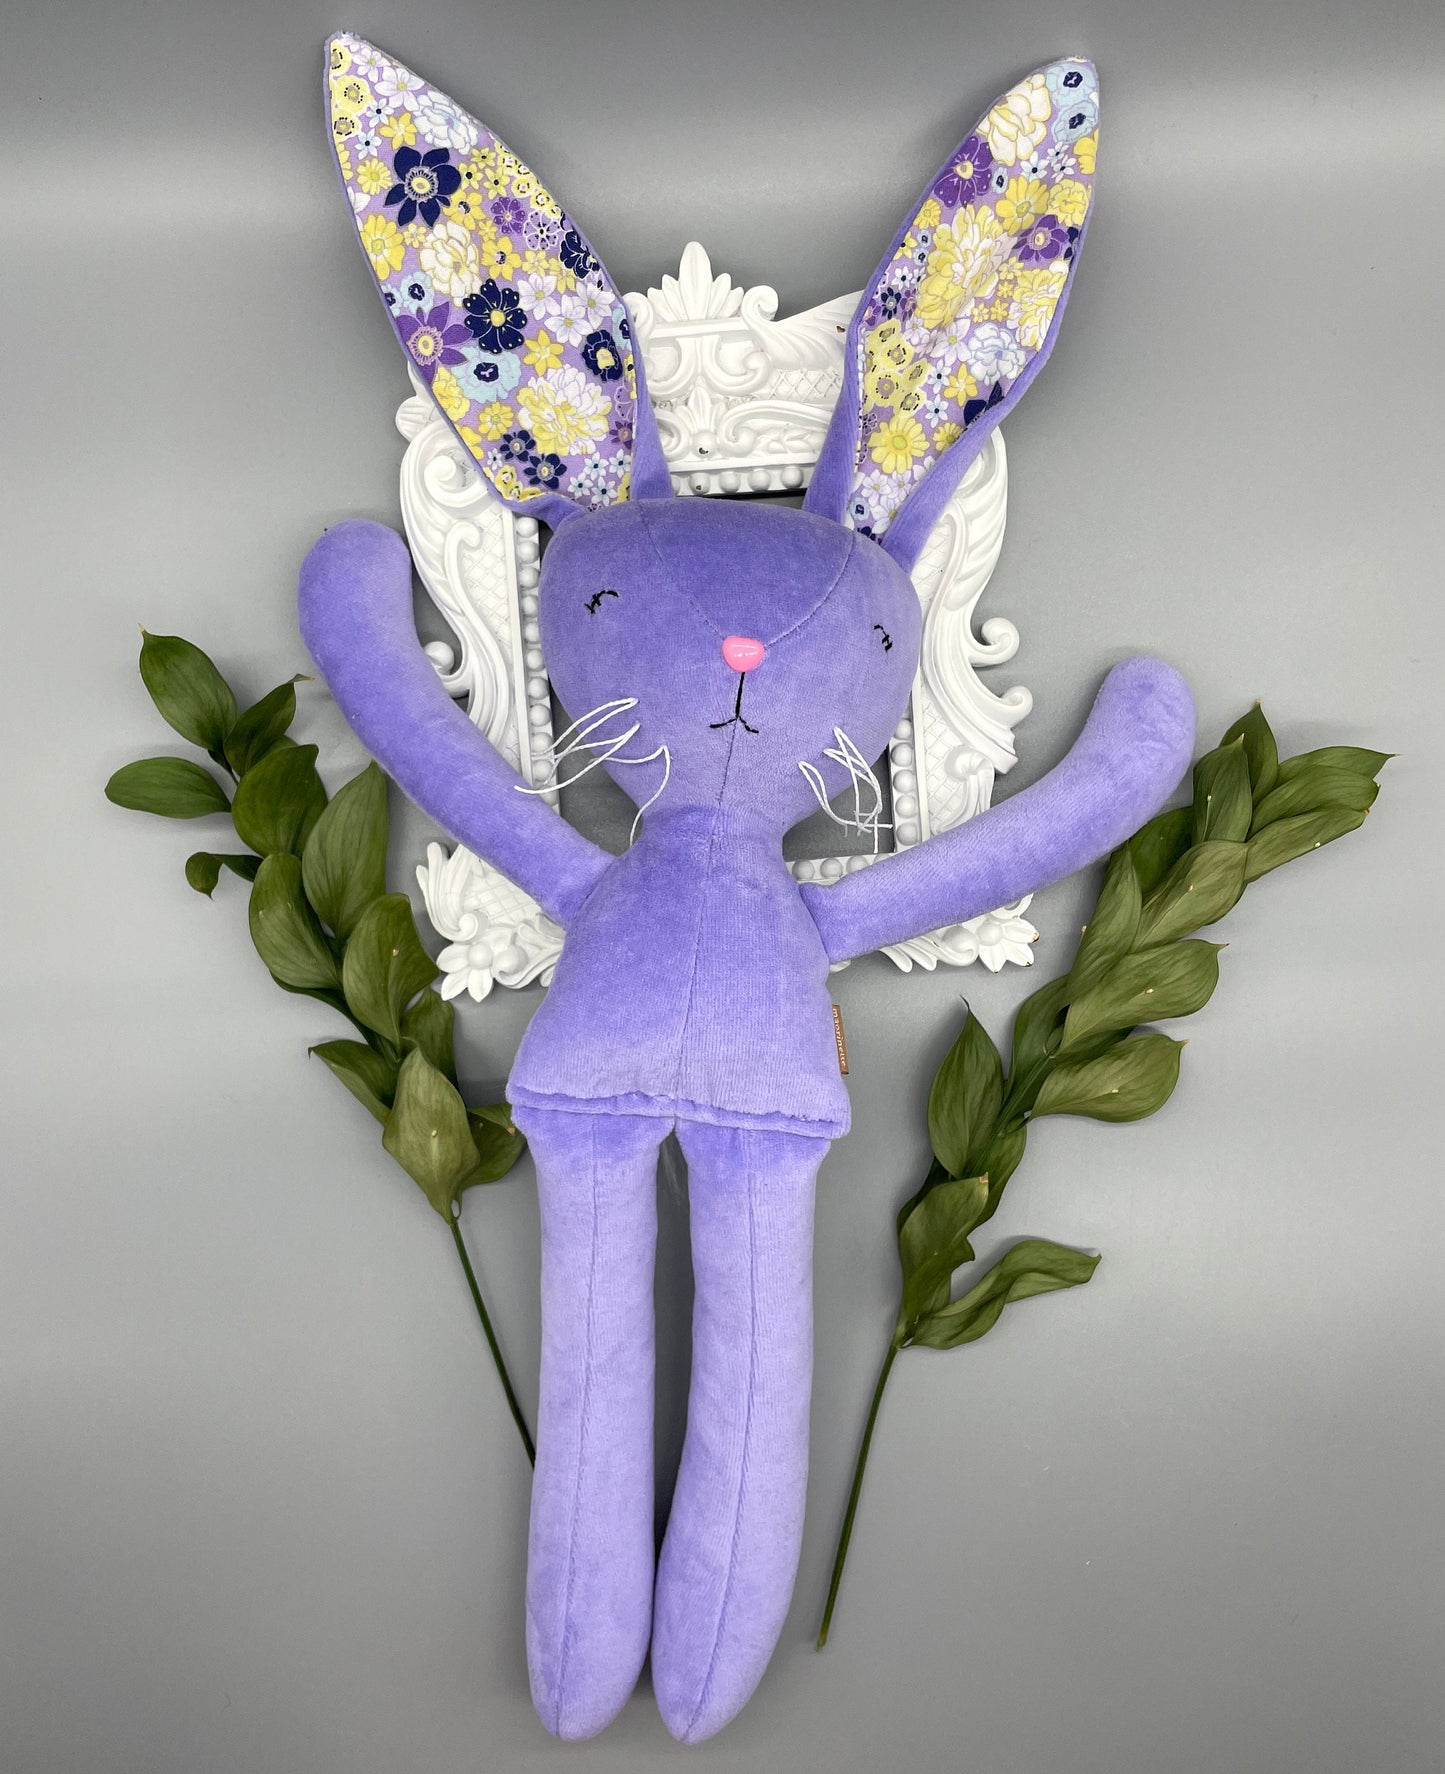 Reversible Handmade Easter Bunny, "BIRGITTA", Stuffed animal, girl boy easter basket, plush rabbit, easter gifts, gift for kids, Easter Doll